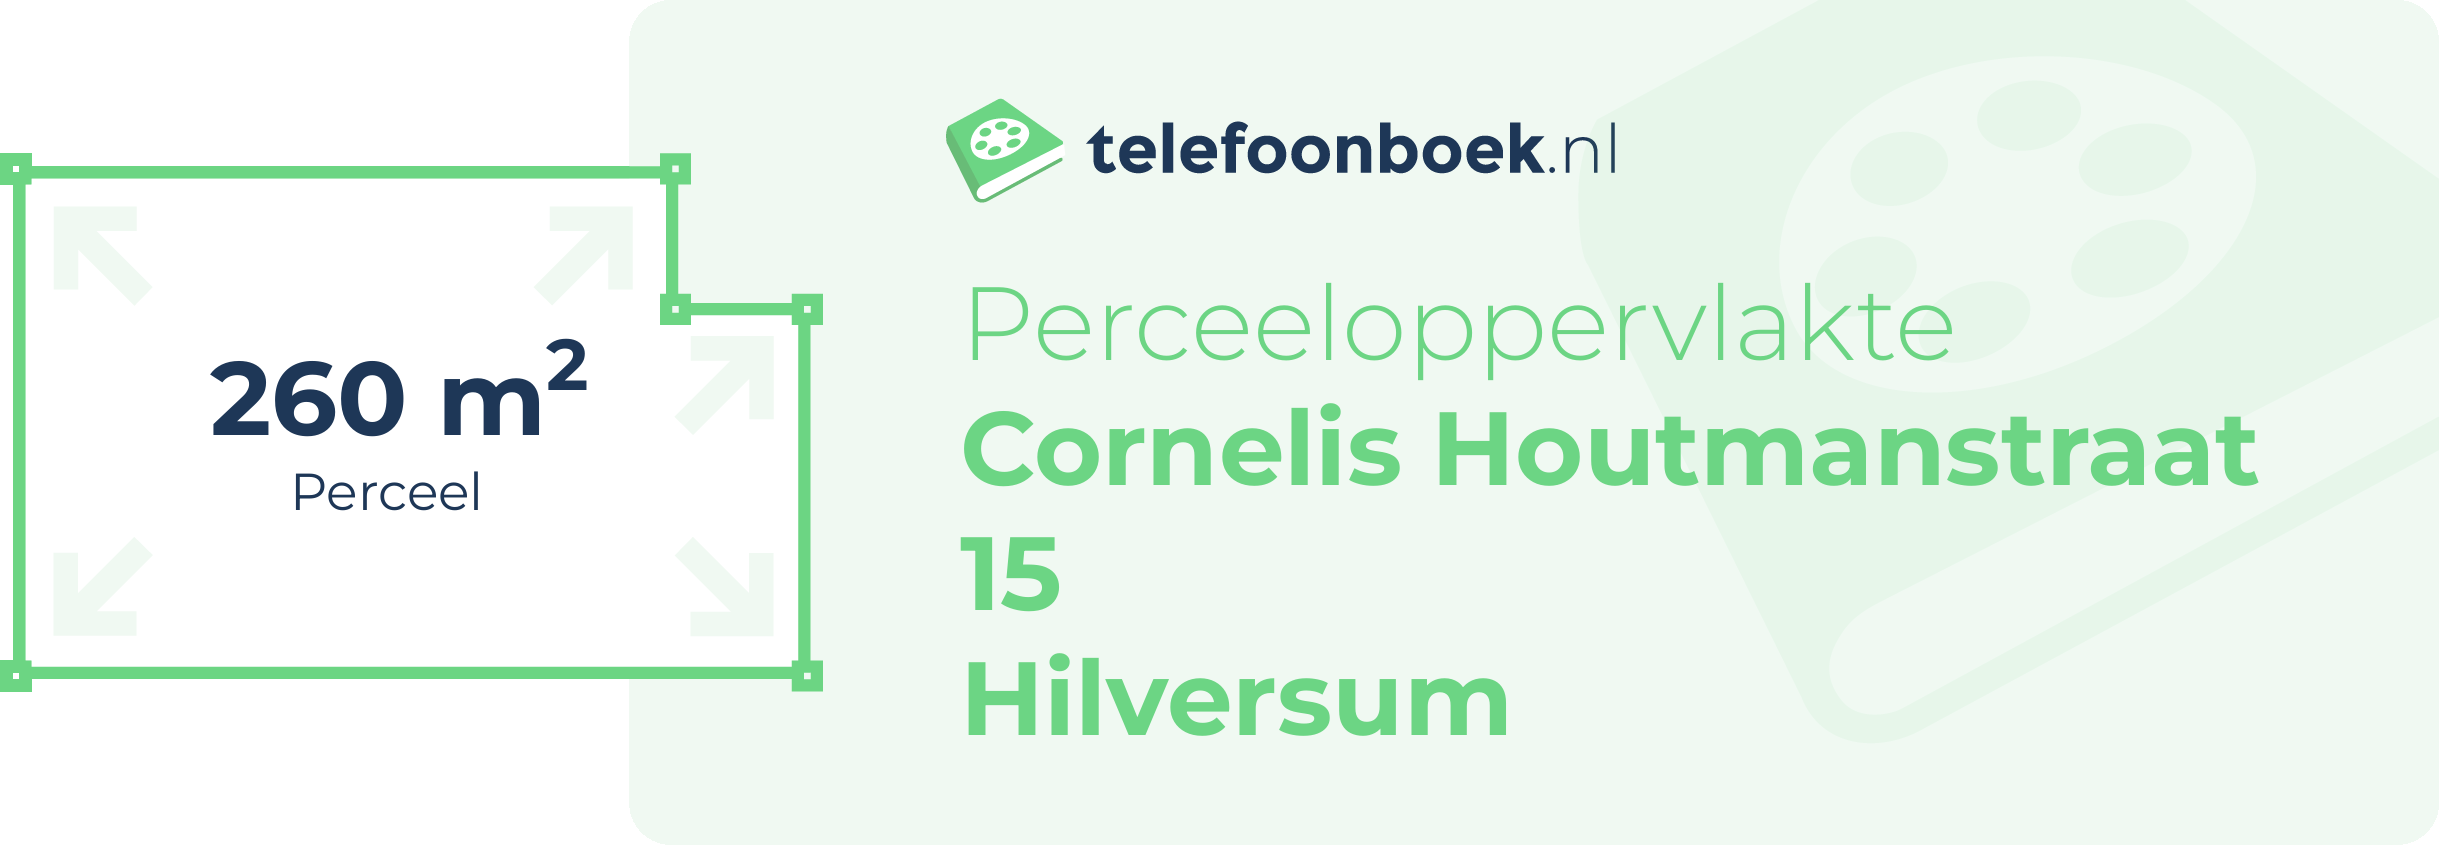 Perceeloppervlakte Cornelis Houtmanstraat 15 Hilversum